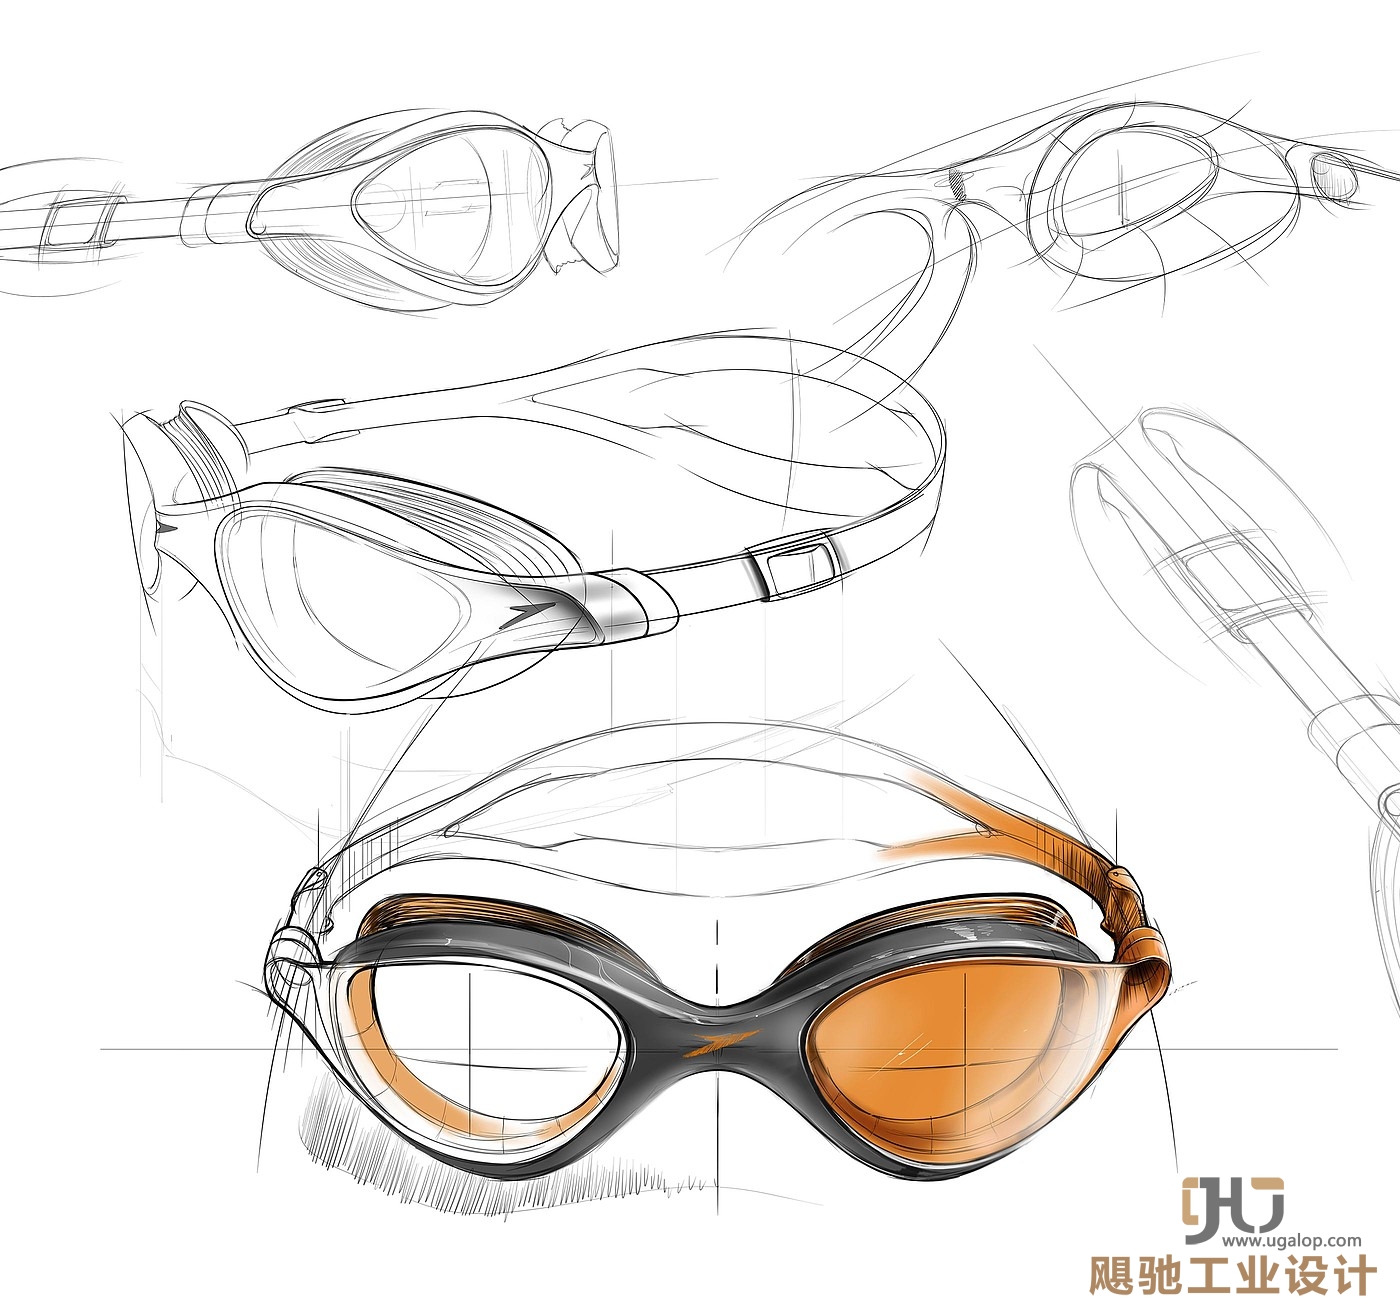 苏州工业设计,苏州体育用品设计公司,苏州泳镜造型设计公司,上海泳镜结构设计,游泳眼镜外观造型设计公司